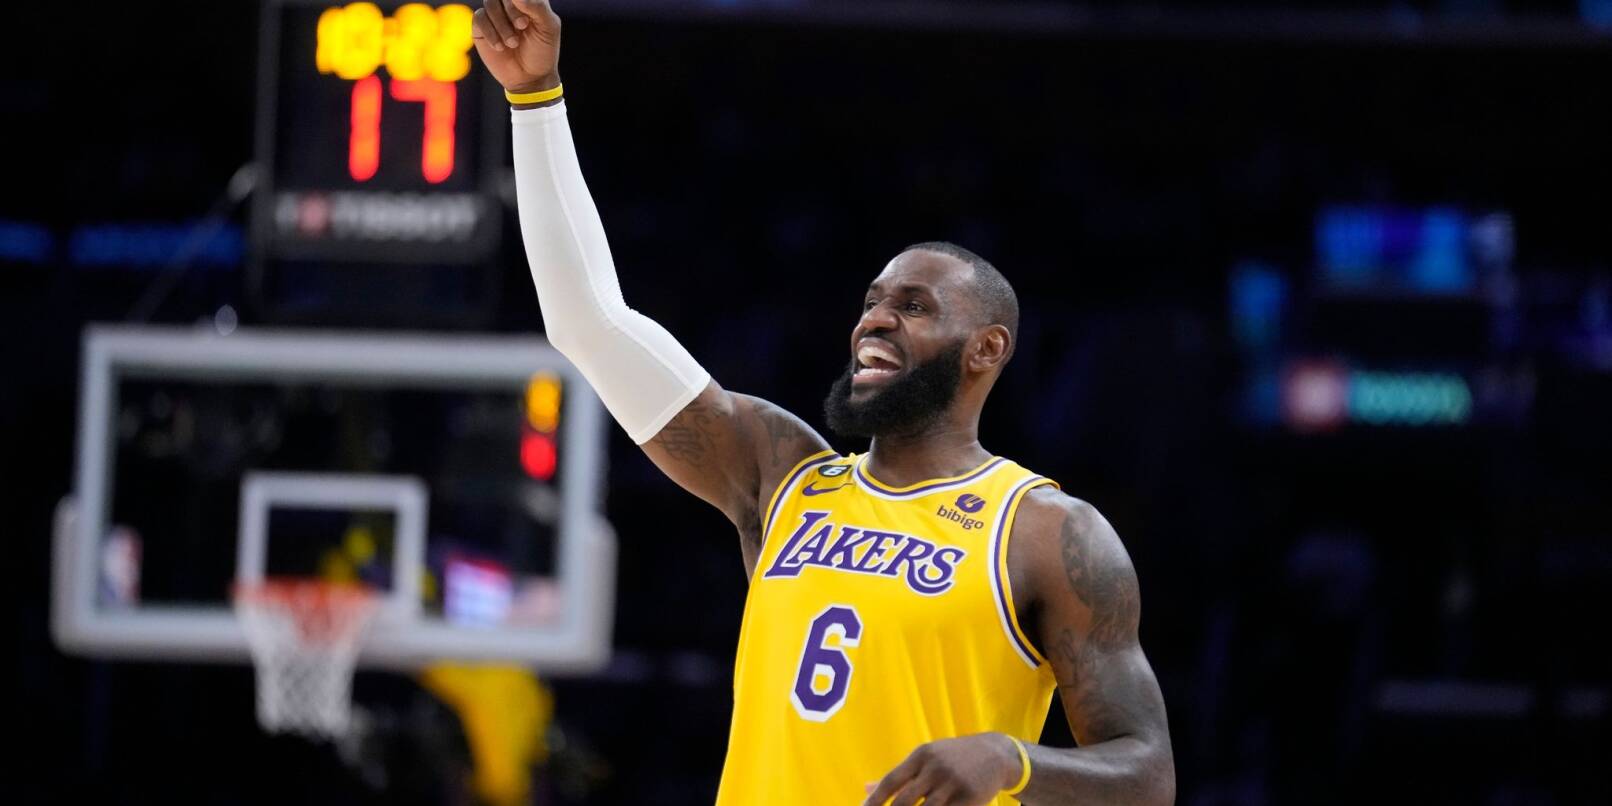 Basketball-Superstar LeBron James spielt auch nächste Saison bei den Lakers.